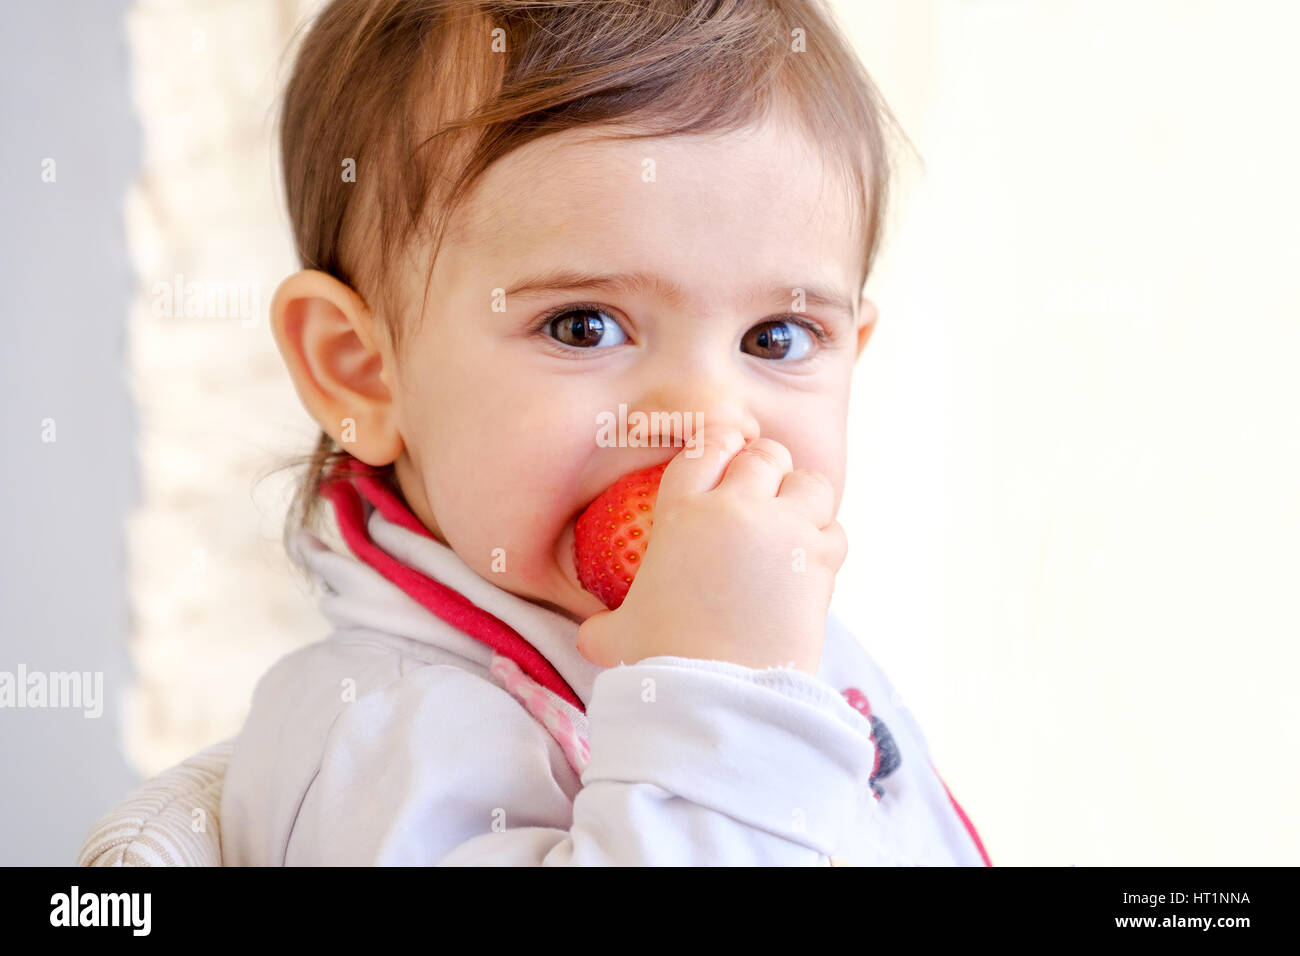 baby bite strawberry newborn eat fruit Stock Photo